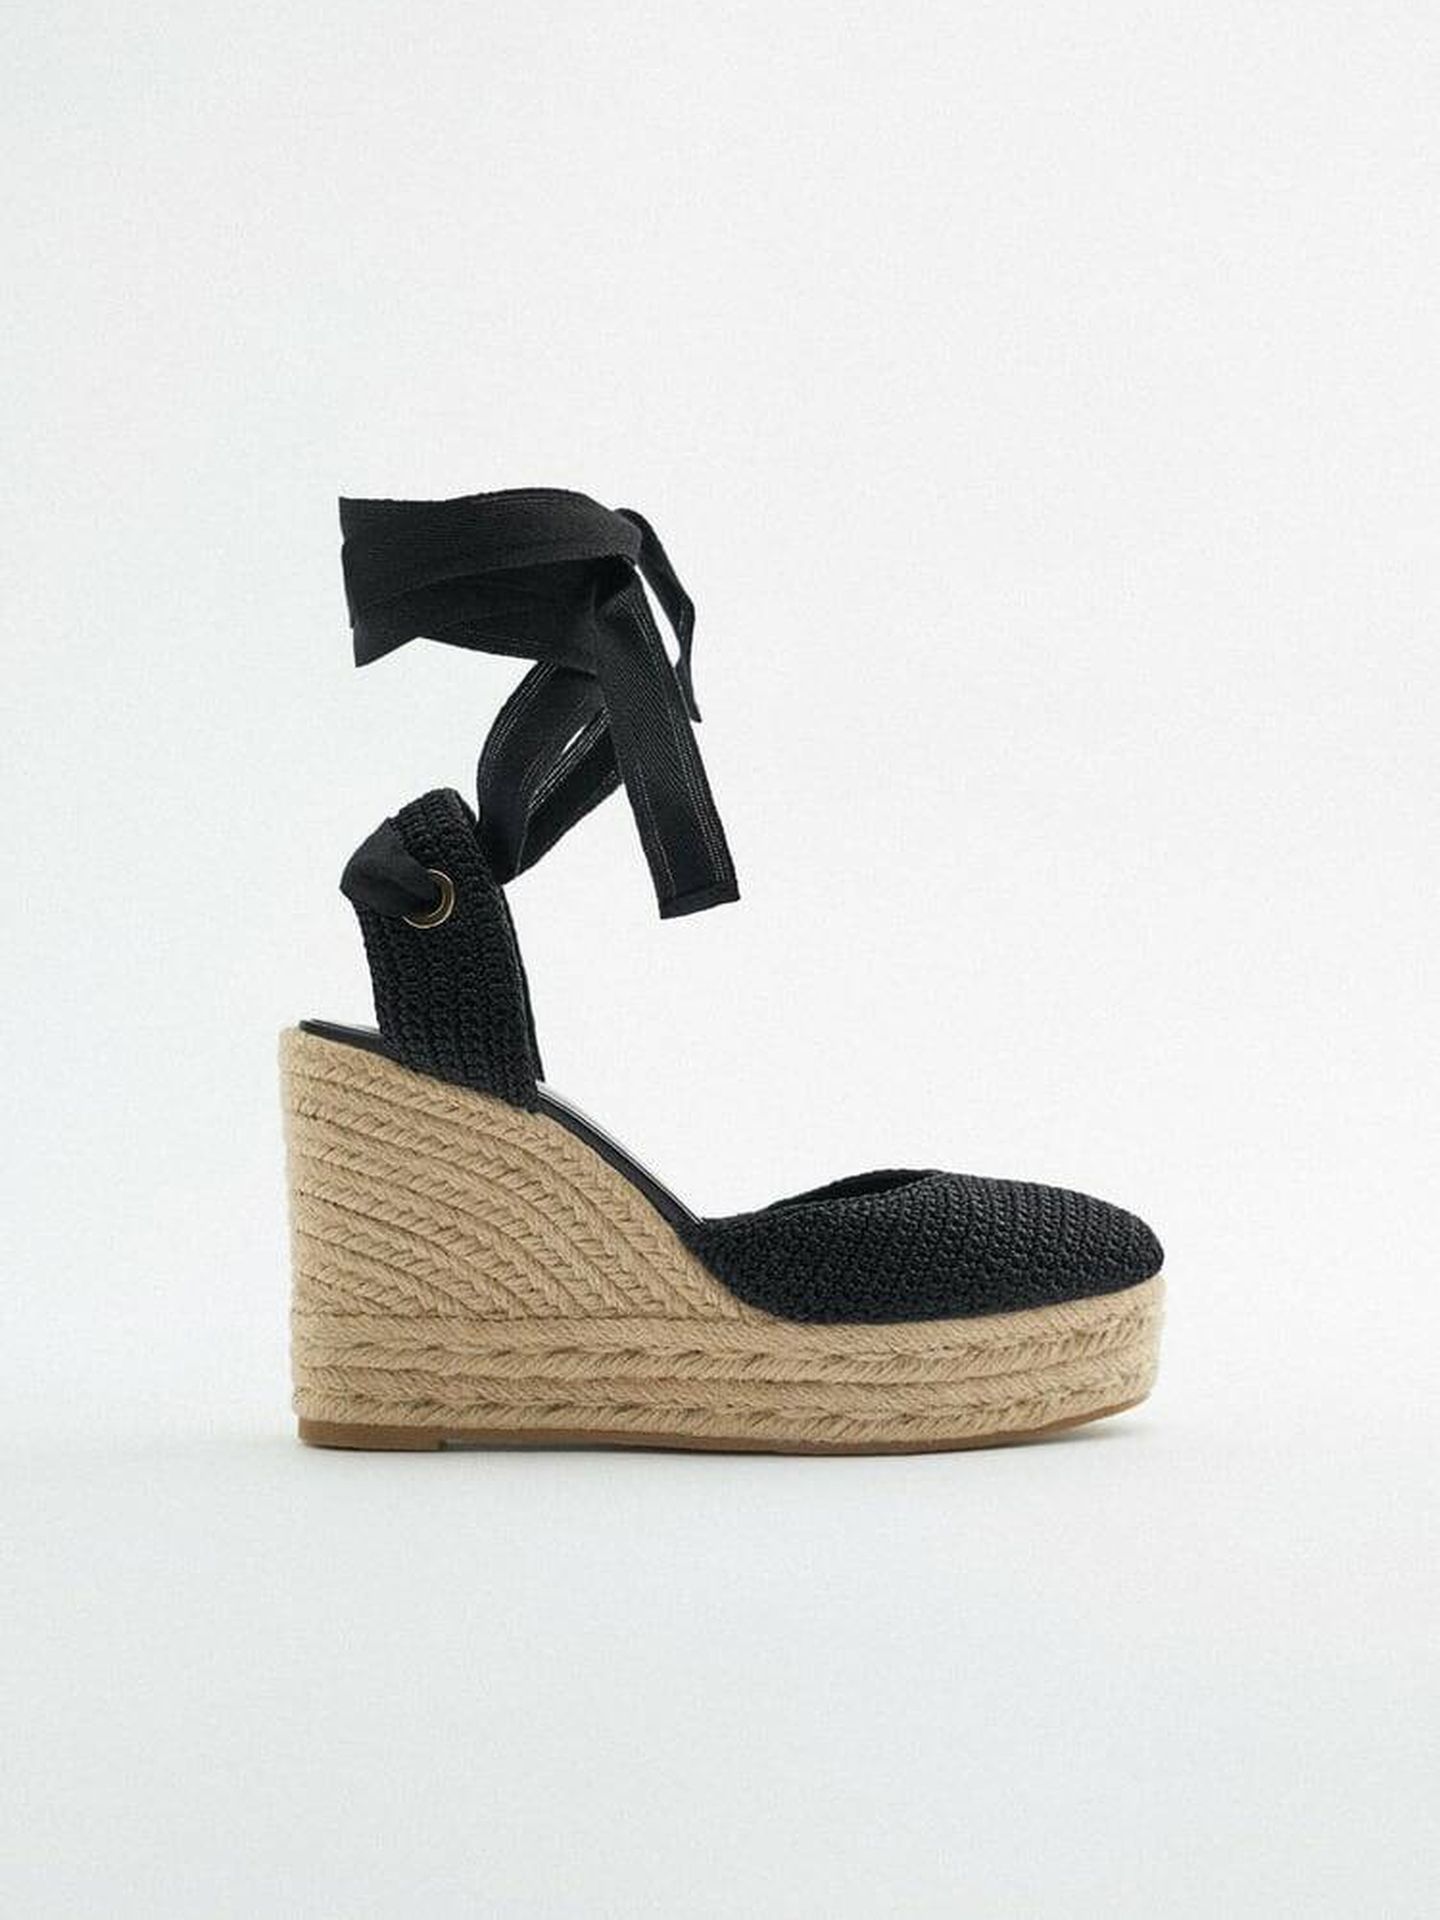 Las nuevas sandalias de cuña de Zara. (Cortesía)